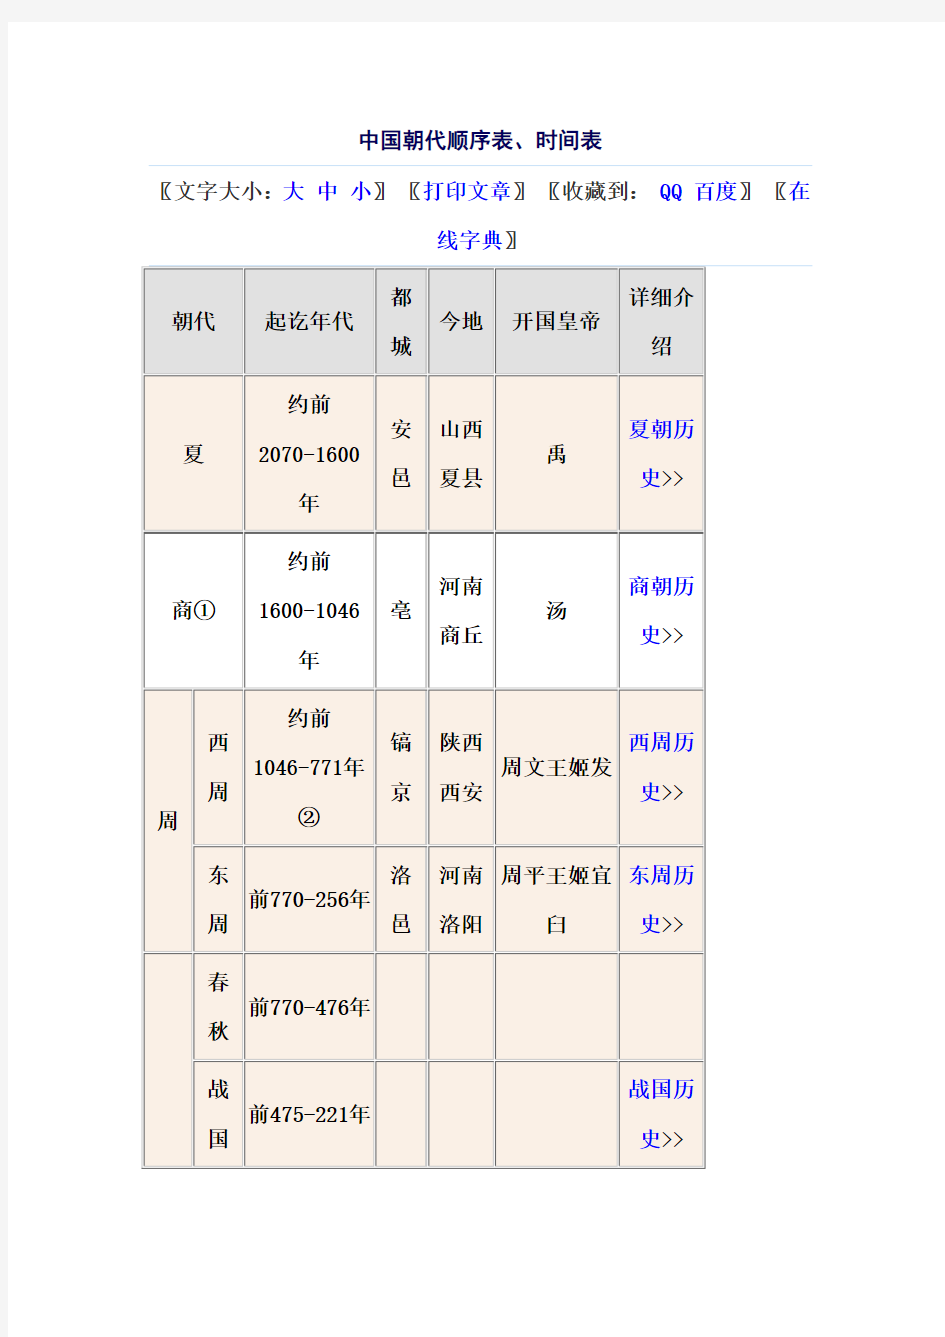 中国朝代顺序表、时间表